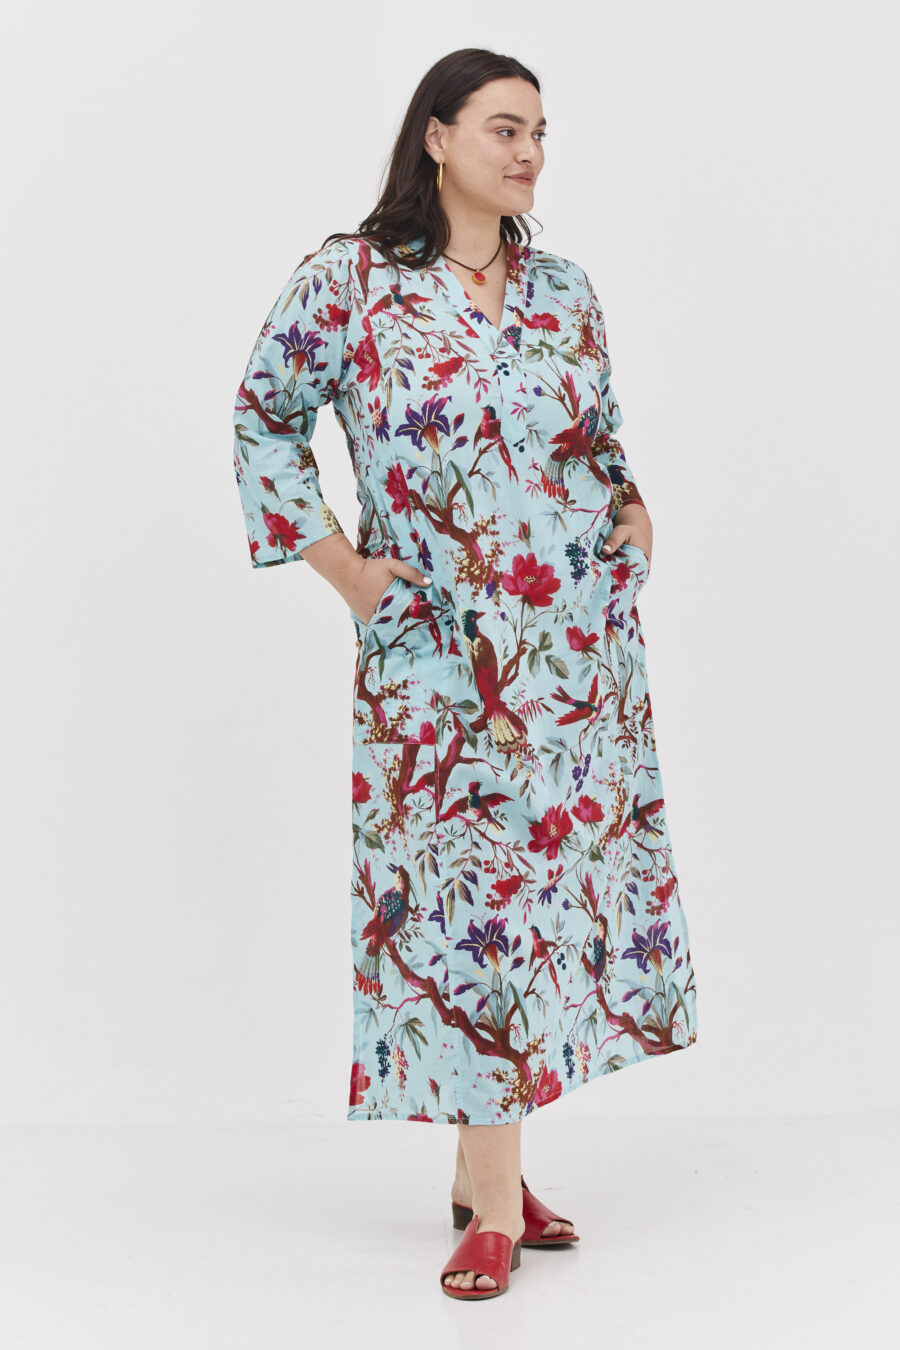 גלביה לנשים | גלבייה בעיצוב ייחודי – שמלה טורקיז עם הדפס טרופי של קומפורט זון בוטיק